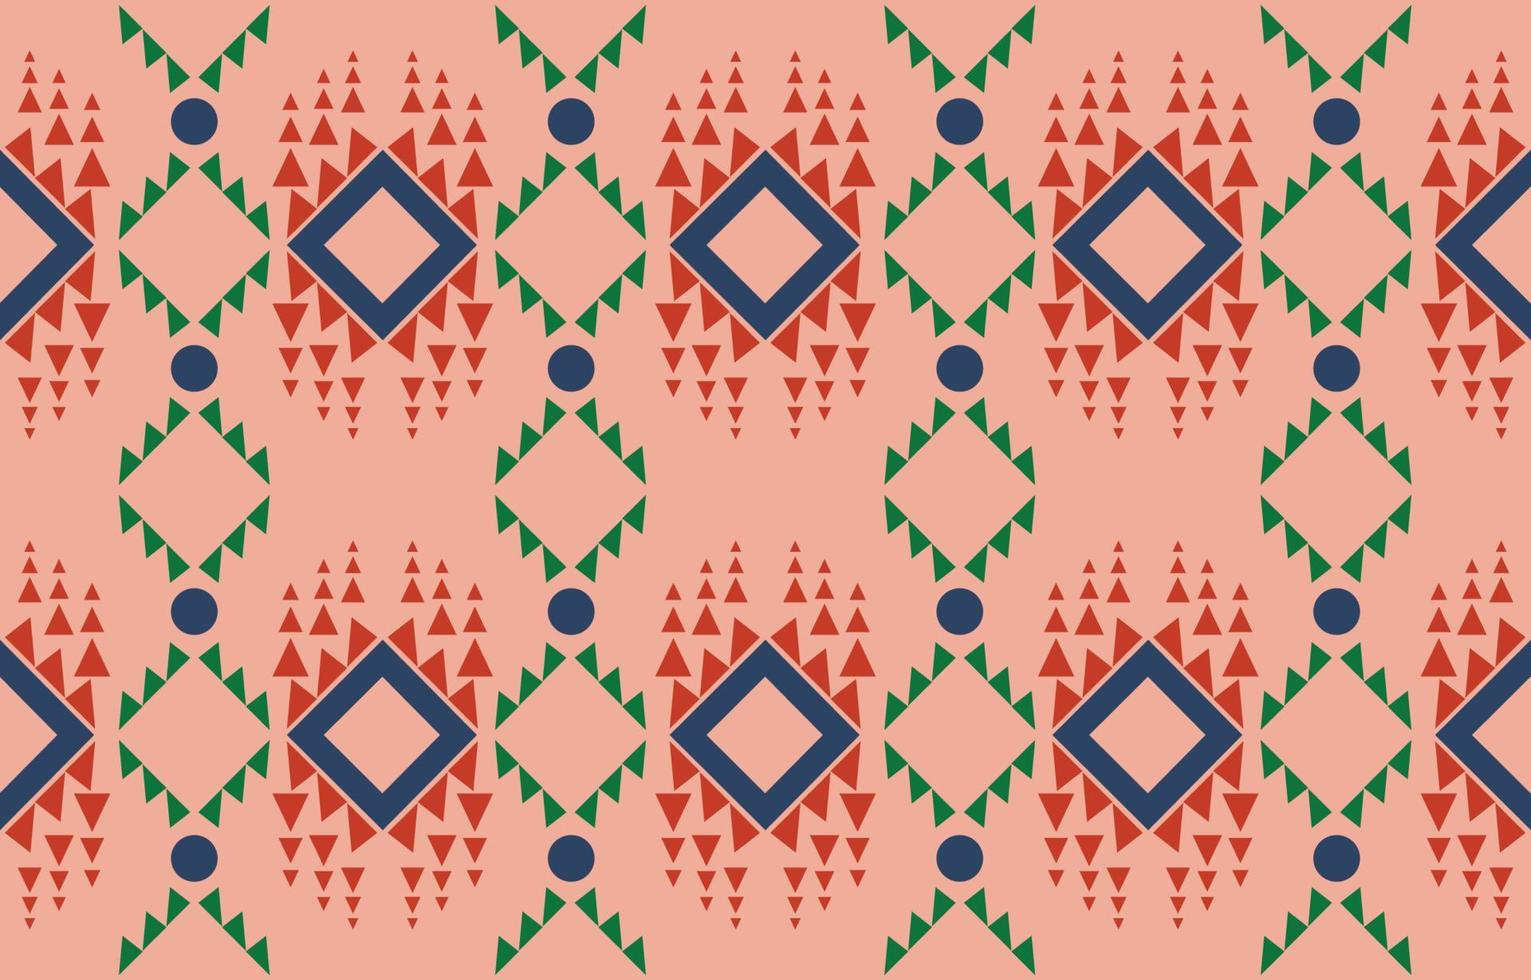 padrão sem emenda de tecido nativo americano navajo, fundo tradicional étnico tribal geométrico, elementos de design, design para tapete, papel de parede, roupas, tapete, interior, ilustração vetorial de bordado. vetor